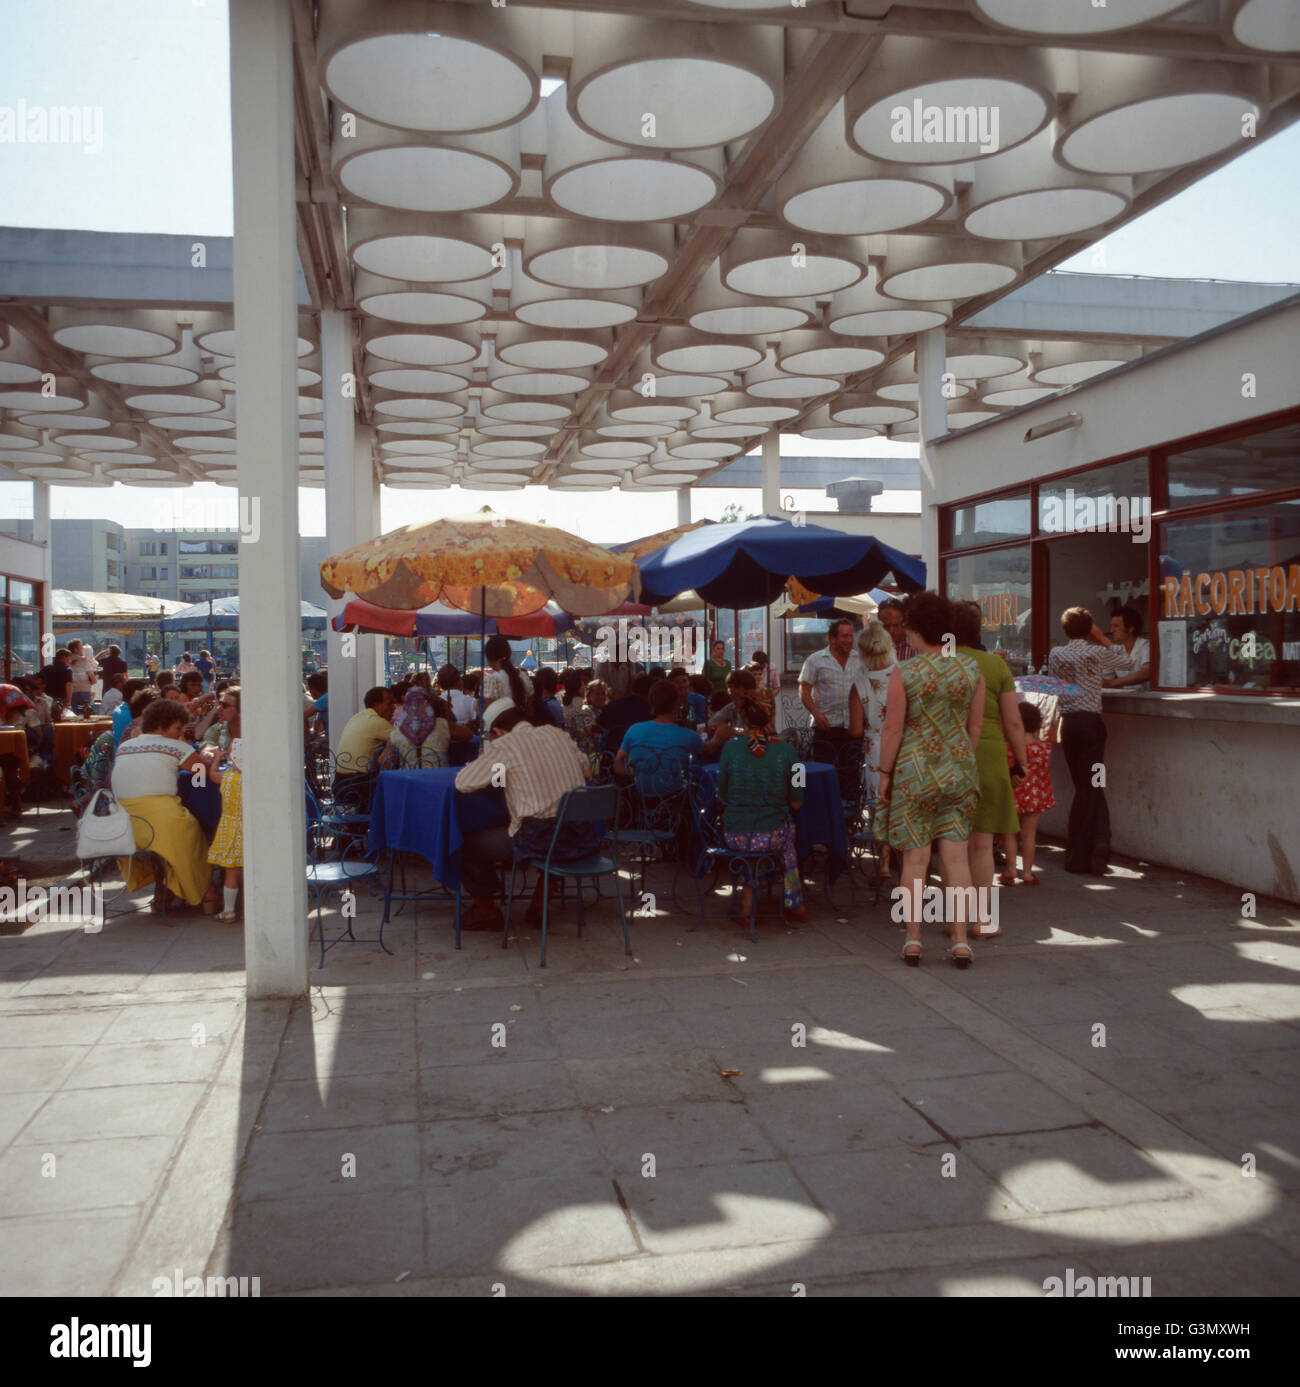 Mittagessen in einem Restaurant im Badeort Neptun, Rumänien 1970er Jahre. Pranzo in un ristorante del centro balneare Nettuno, la Romania degli anni settanta. Foto Stock